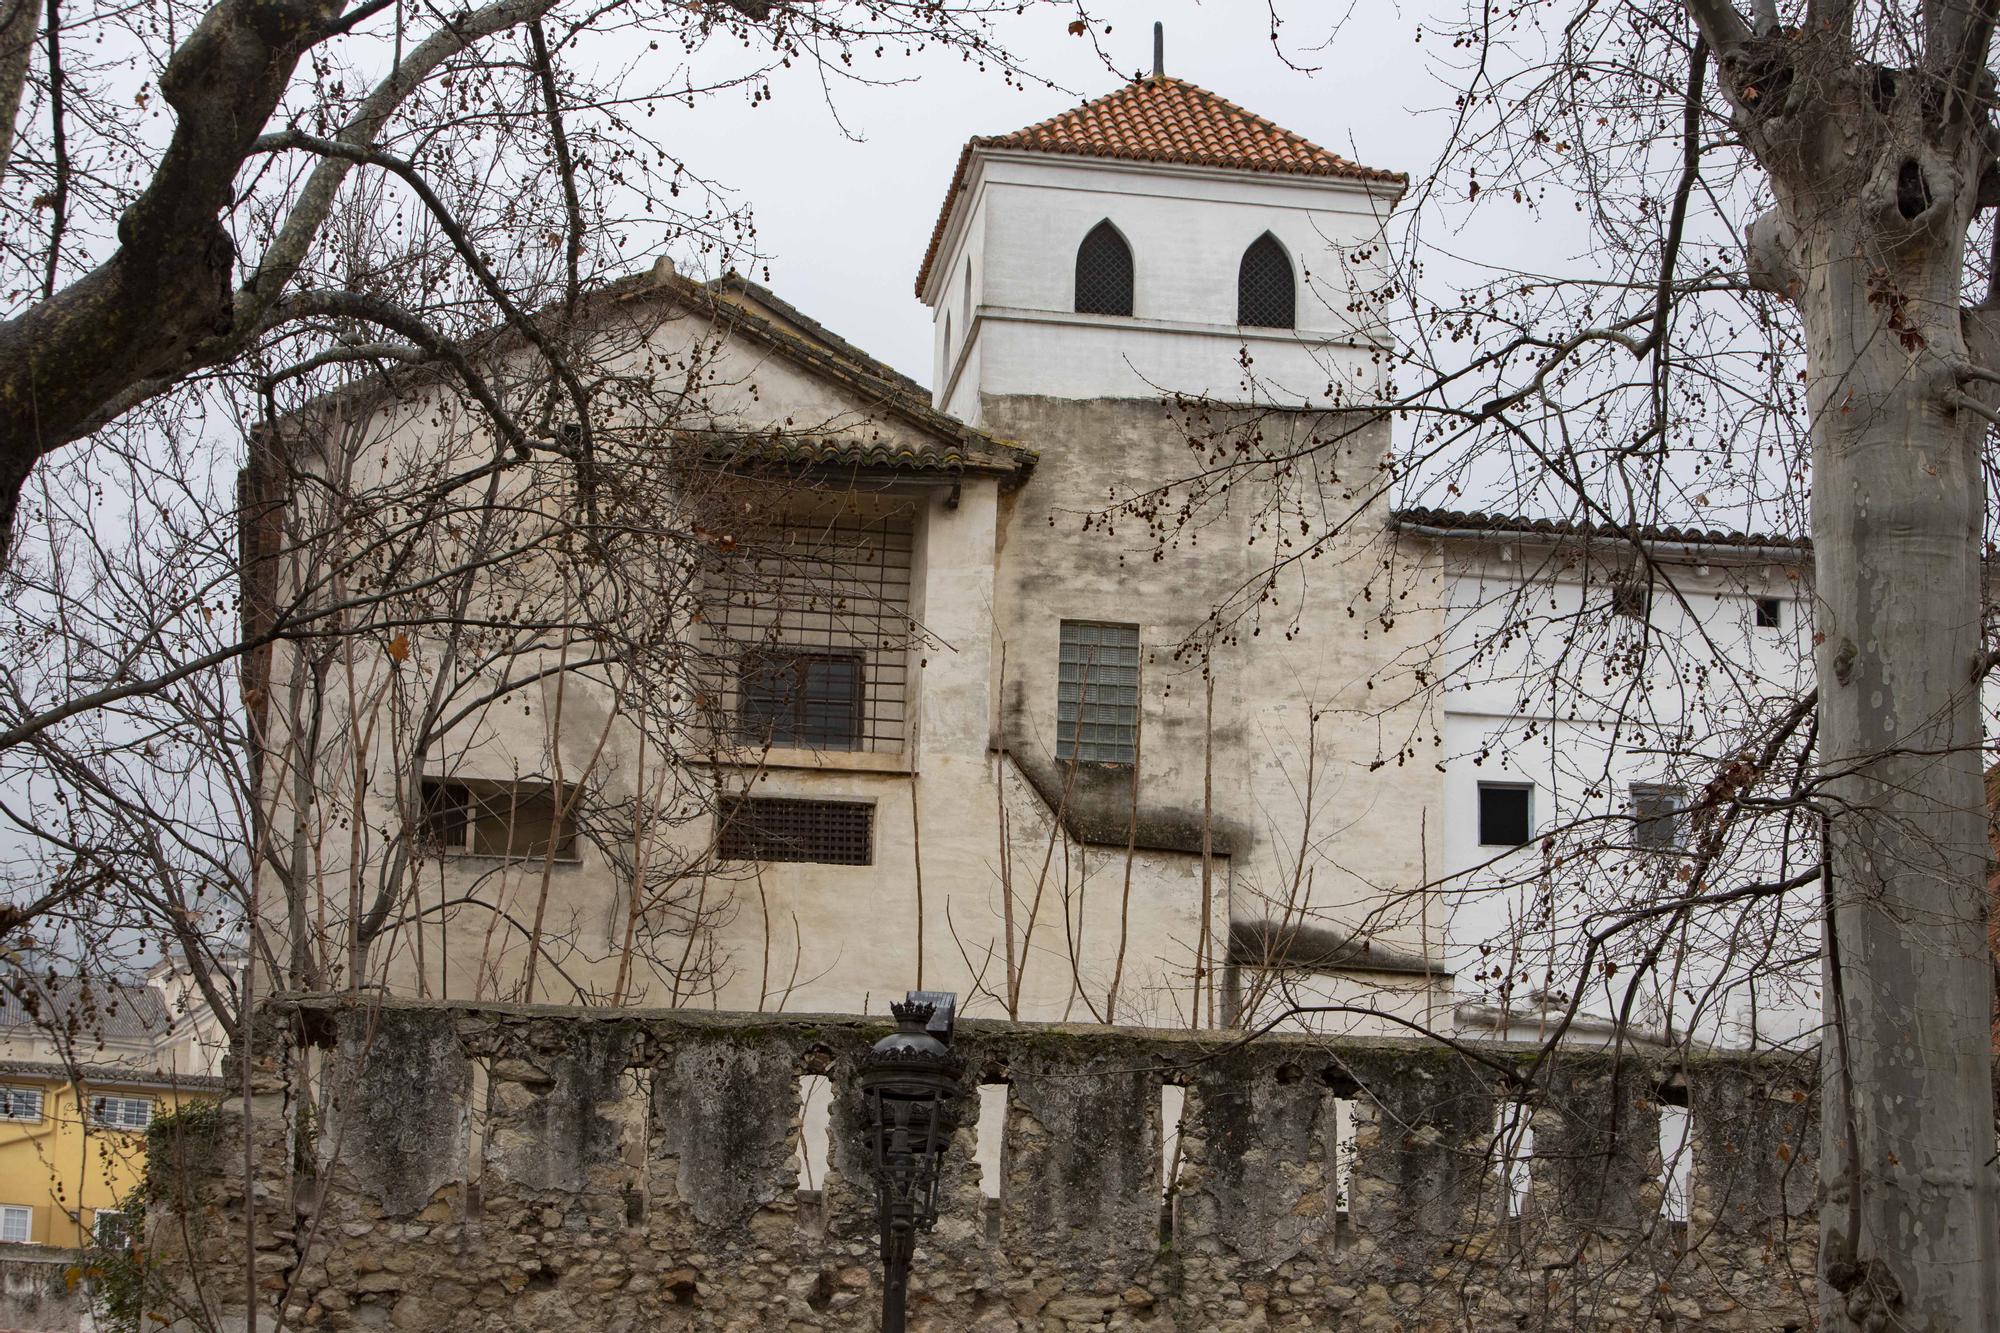 De convento a Palacio de Justicia en Xàtiva